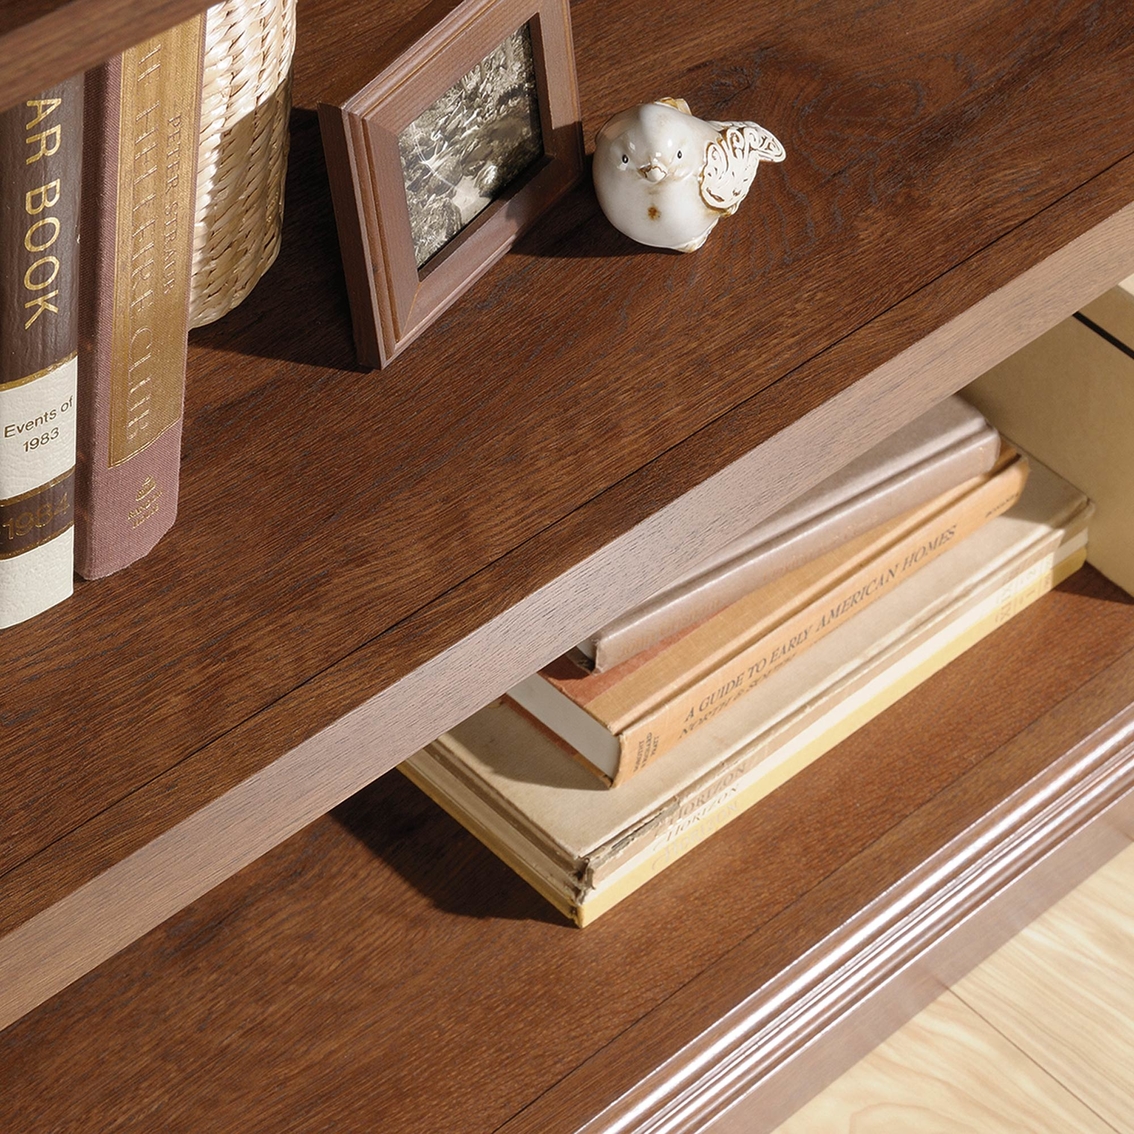 Sauder Select 2 Shelf Bookcase - Image 4 of 5